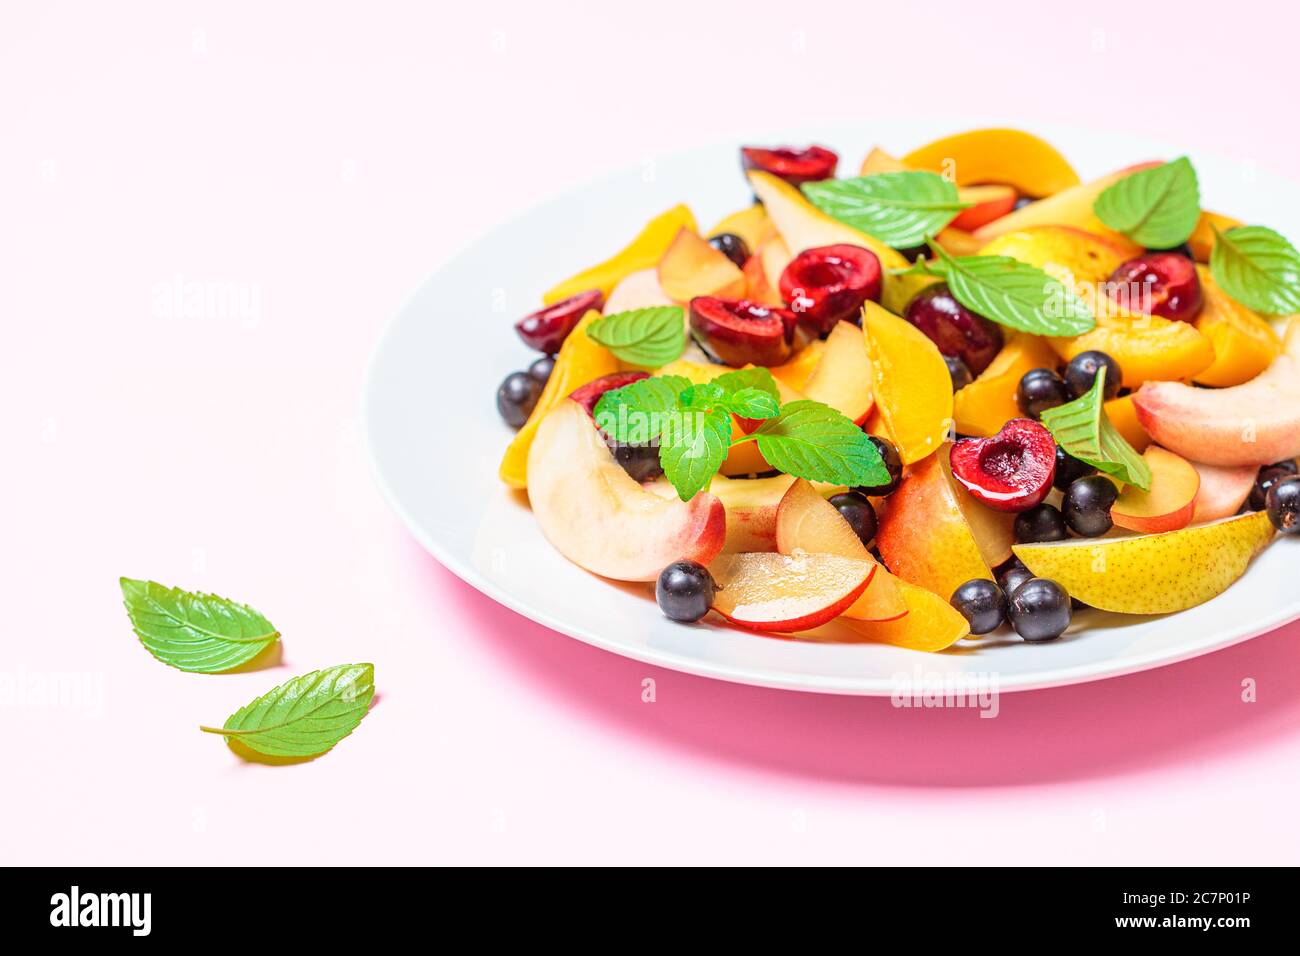 Salade de fruits avec baies dans une assiette blanche, fond rose. Concept alimentaire végétalien sain. Banque D'Images